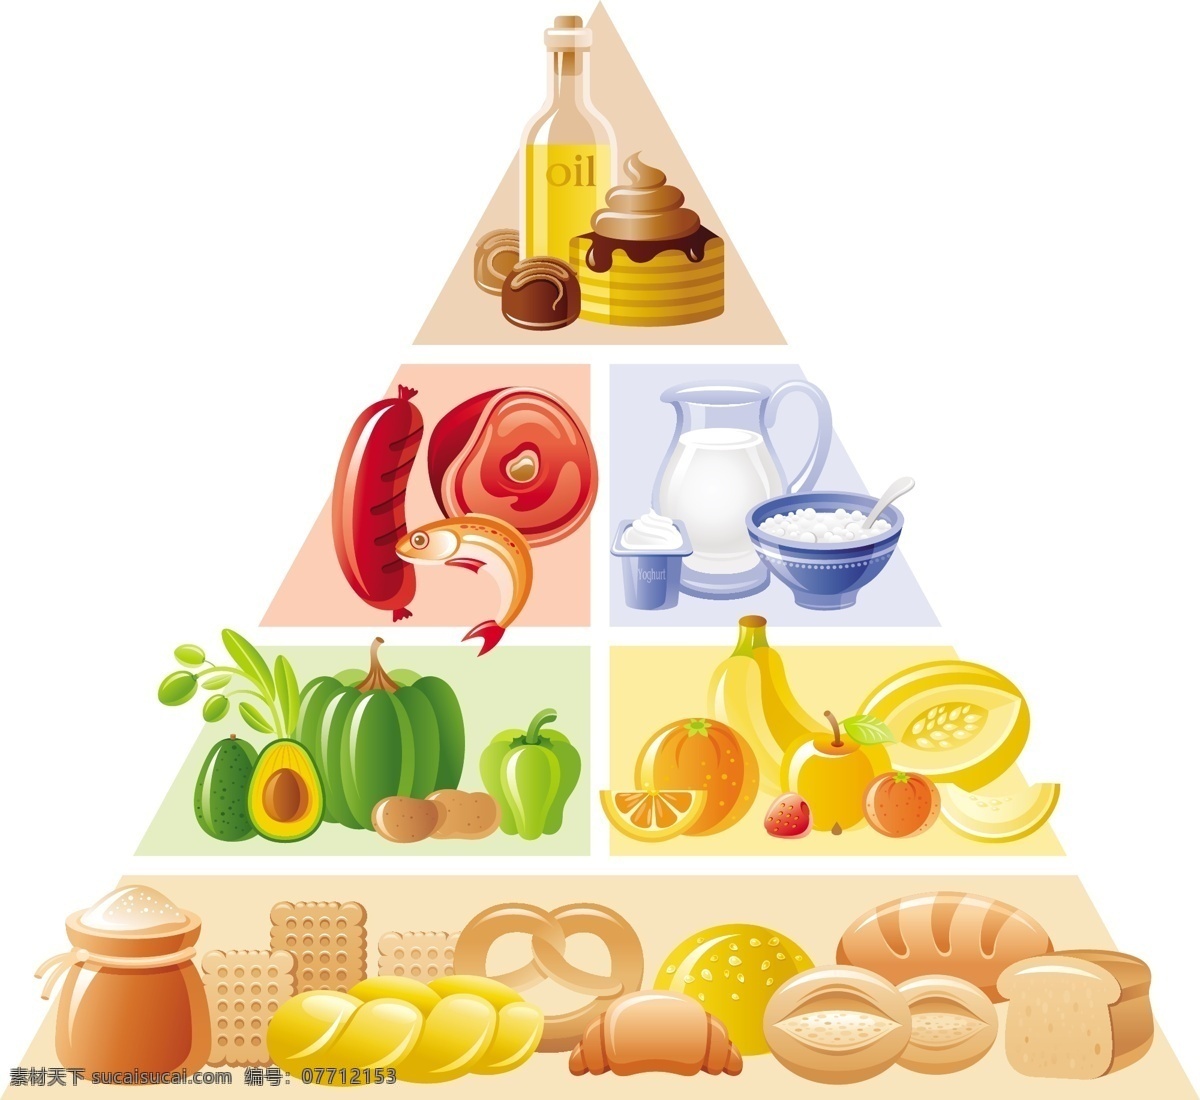 食物金字塔 饮食健康 均衡饮食 食物 食品 水果 蔬菜 主食 肉类 面包 米饭 鱼 牛奶 鸡蛋 图案 矢量 健康 营养 金字塔 生活百科 餐饮美食